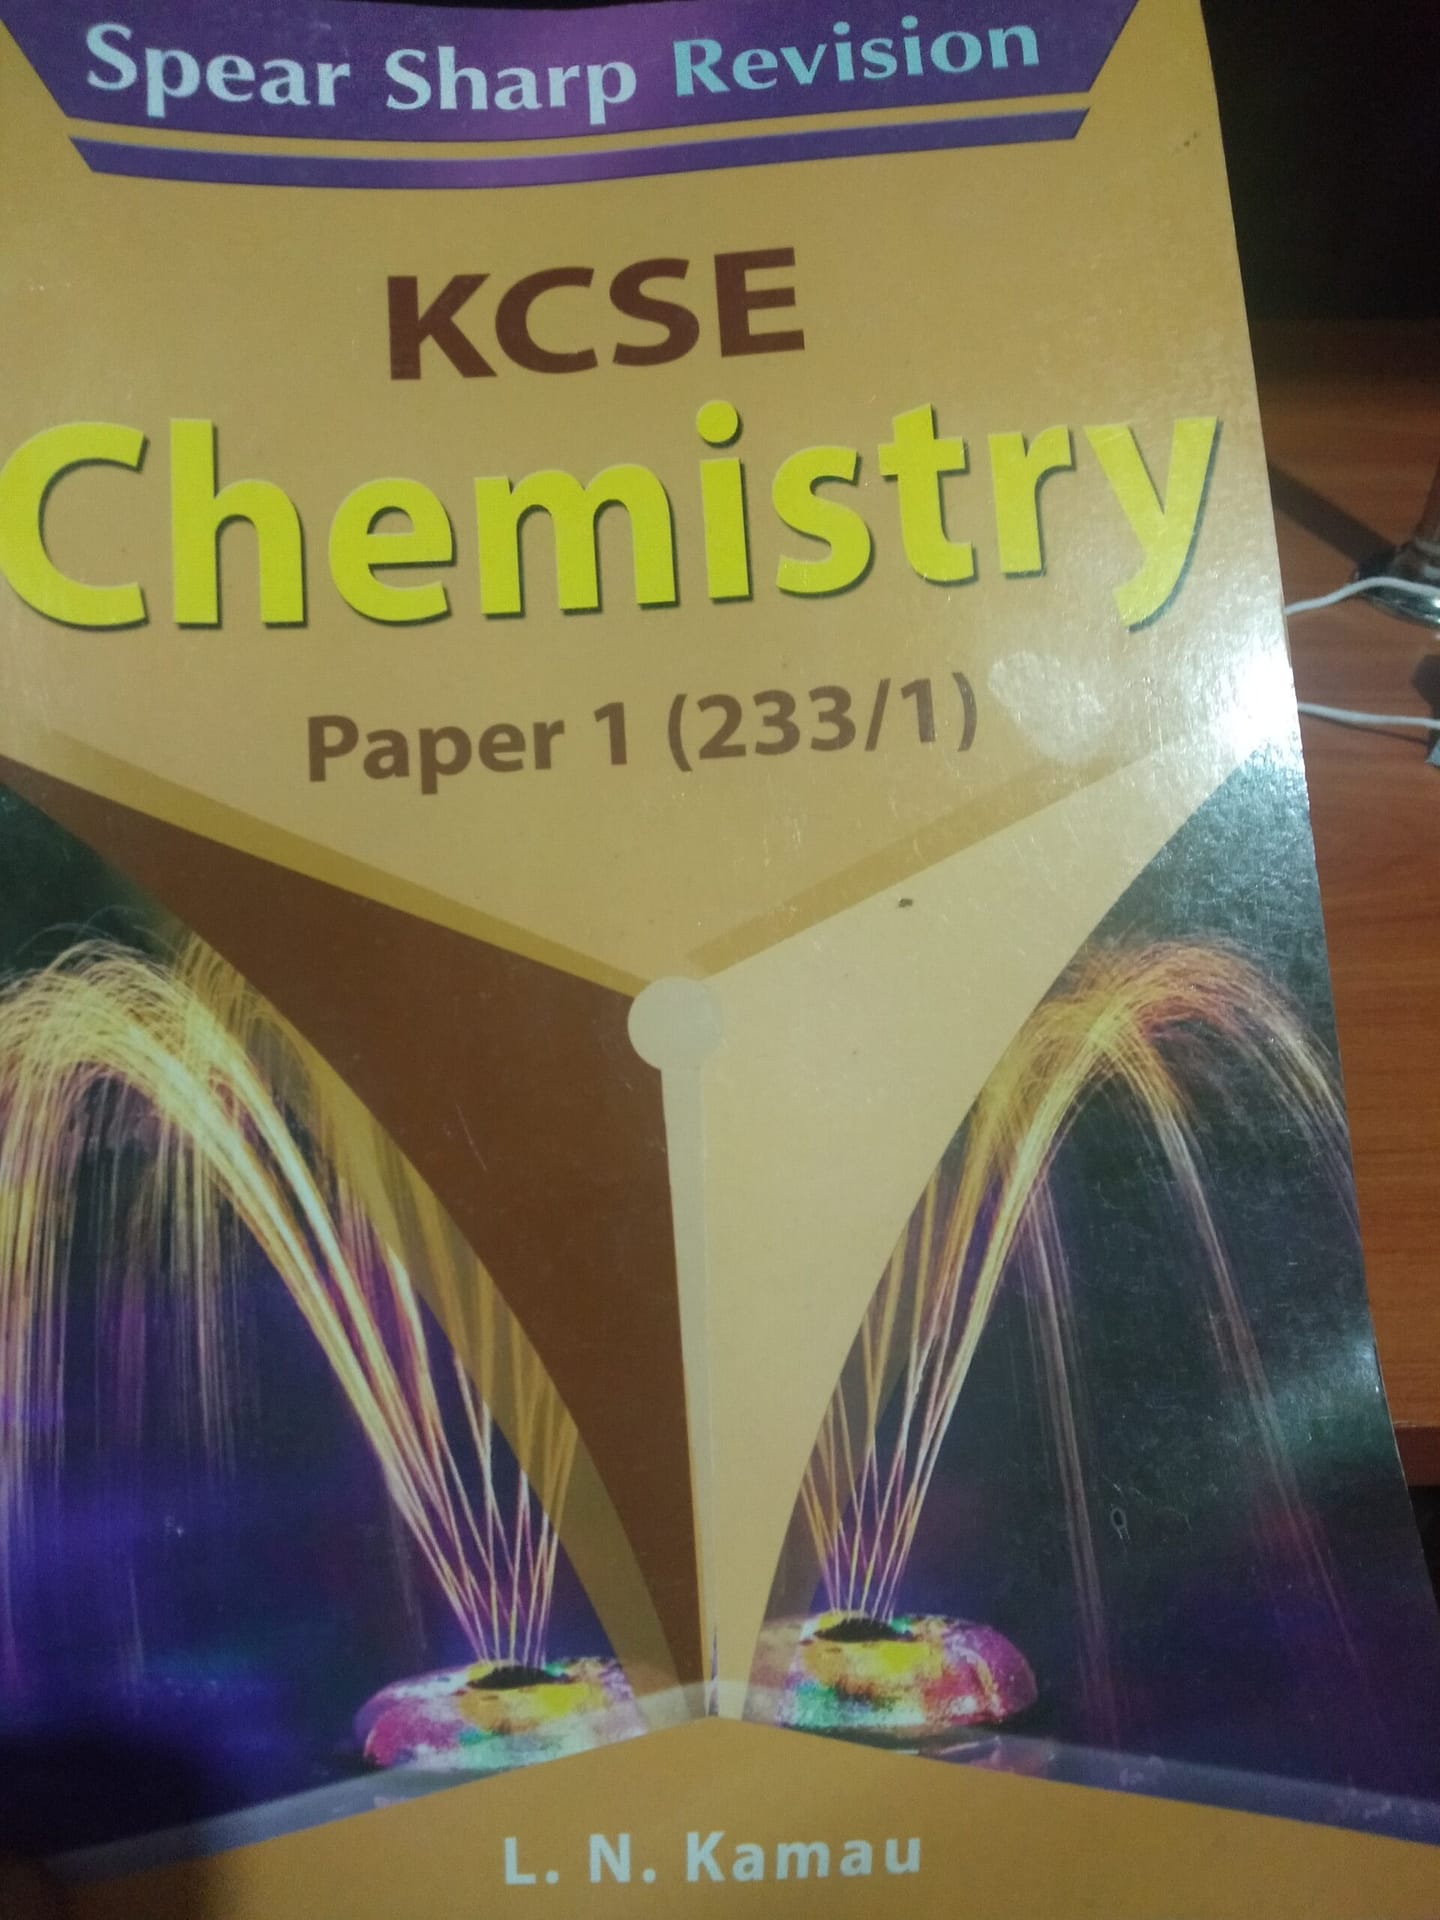 KCSE Chemistry paper 1